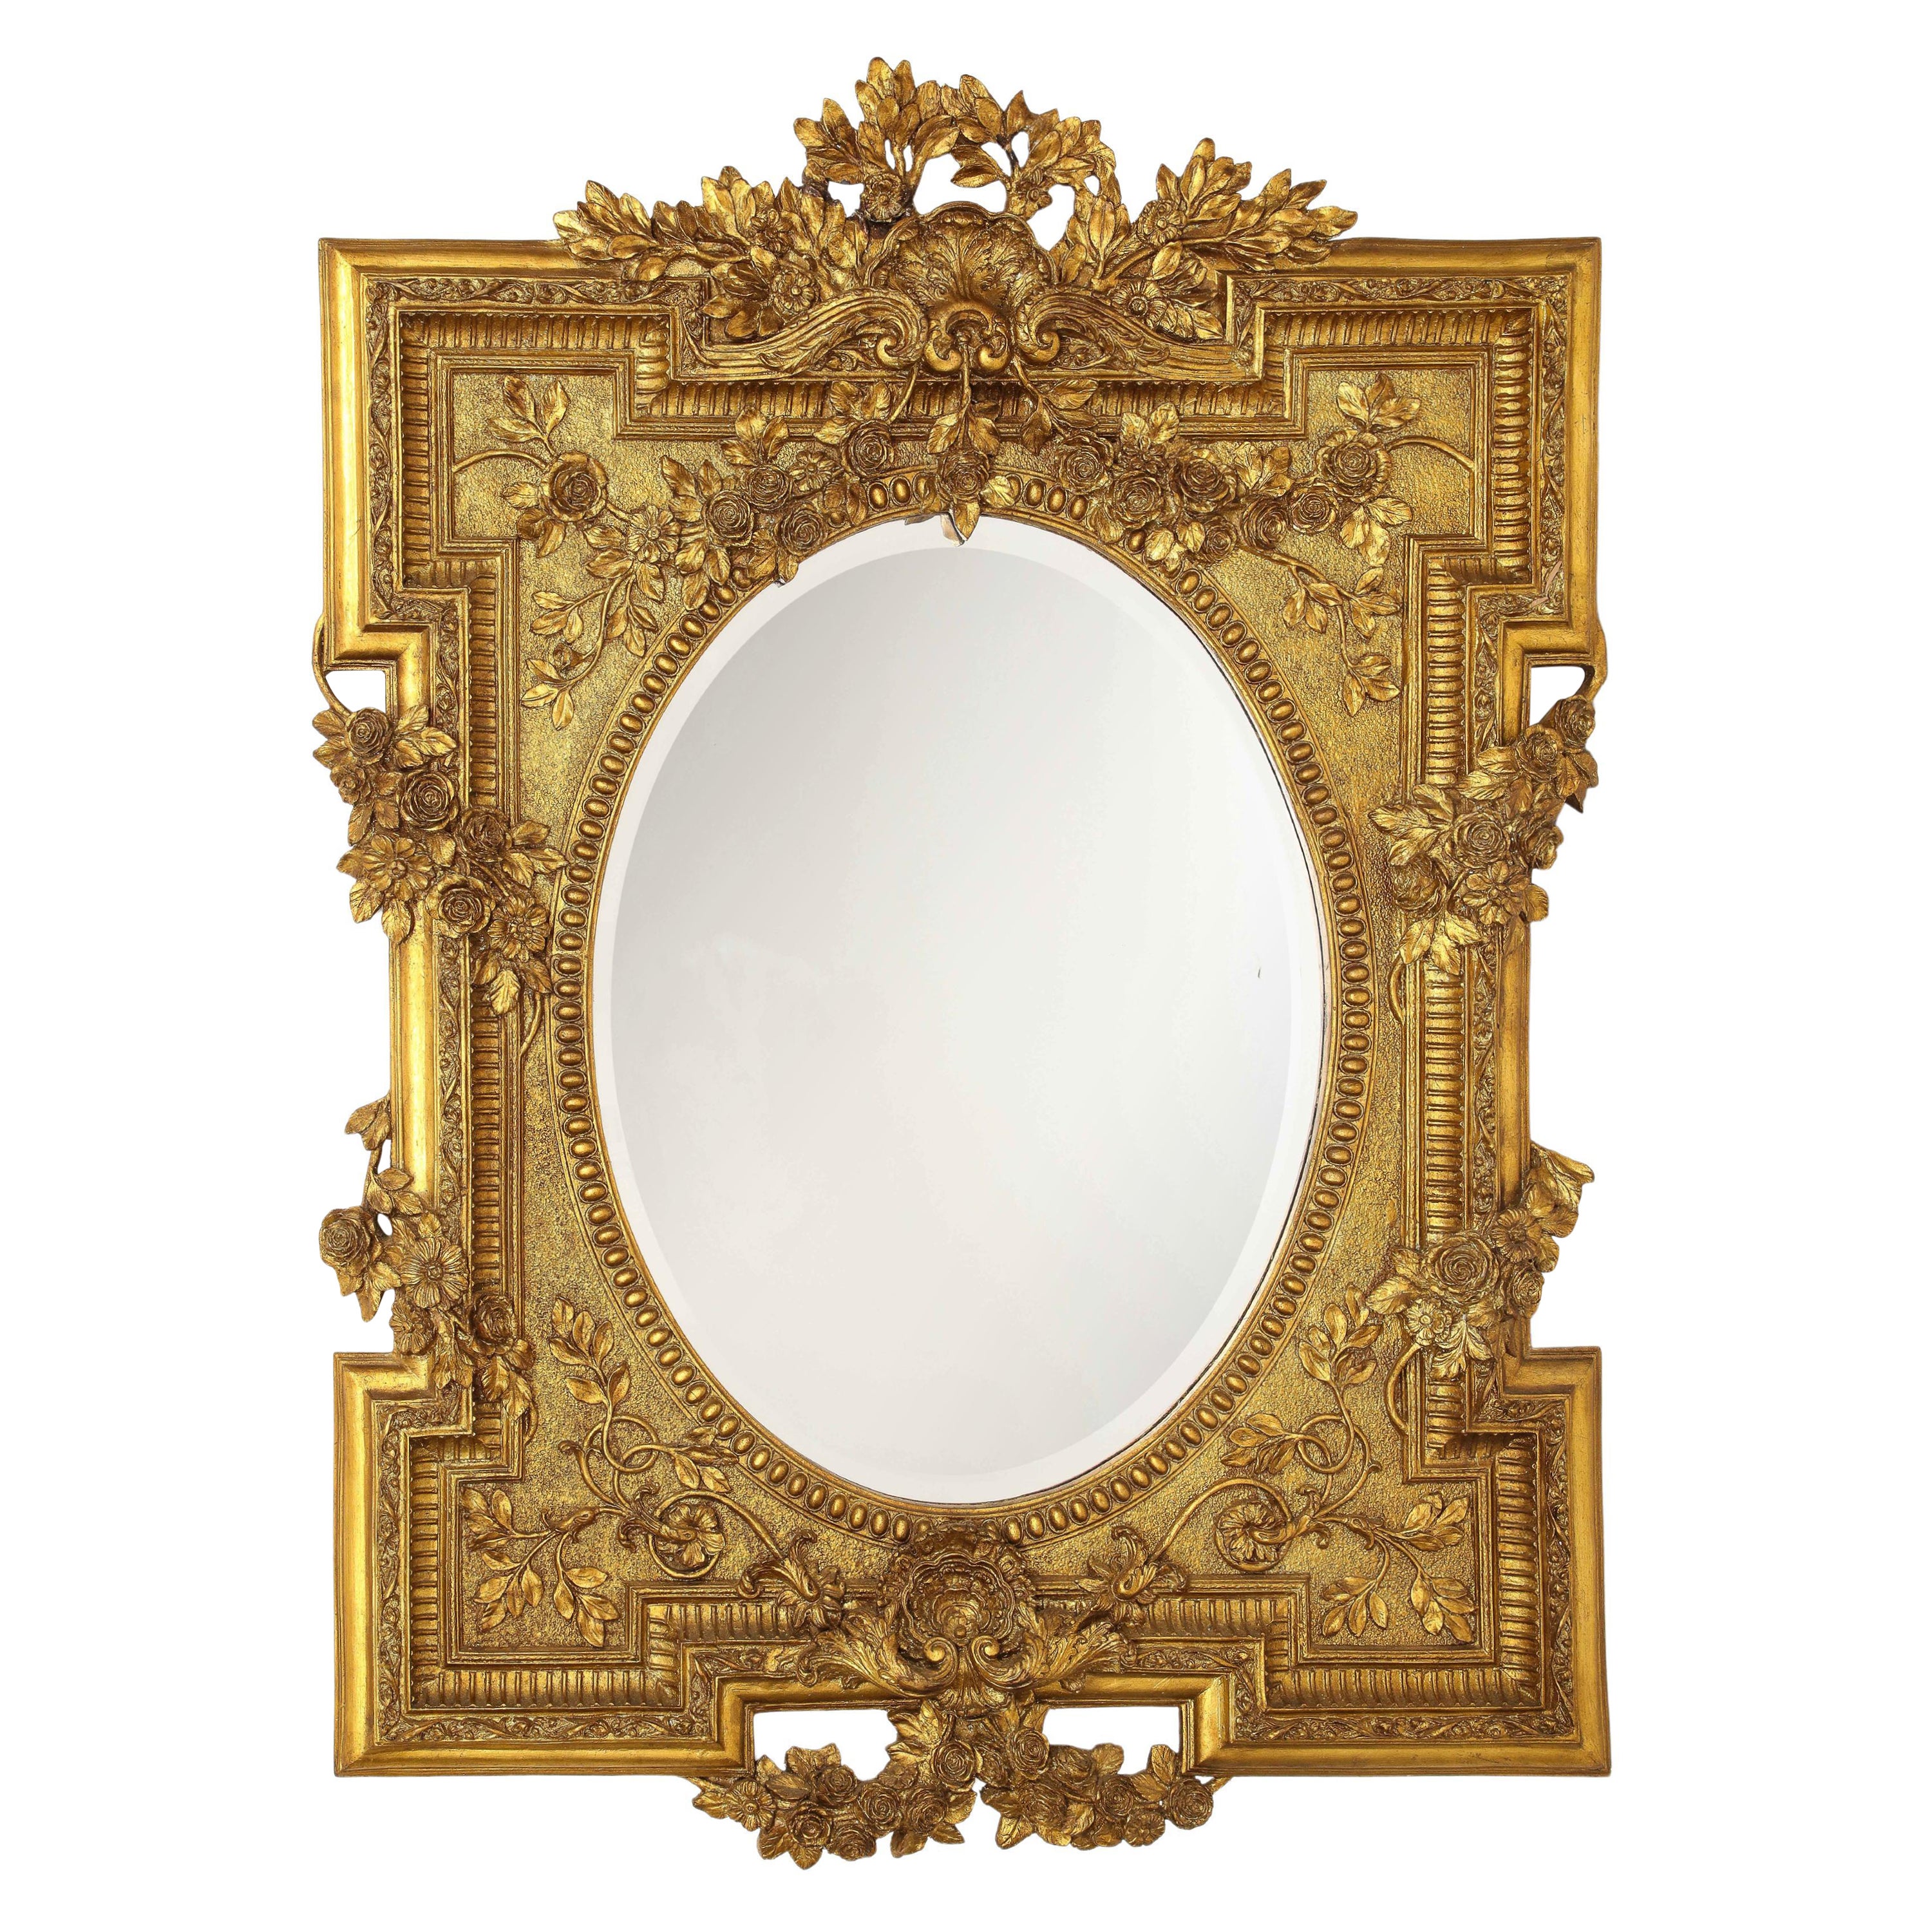 Marvelous Französisch Giltwood Hand geschnitzt abgeschrägten Spiegel mit floralen Ranken Designs